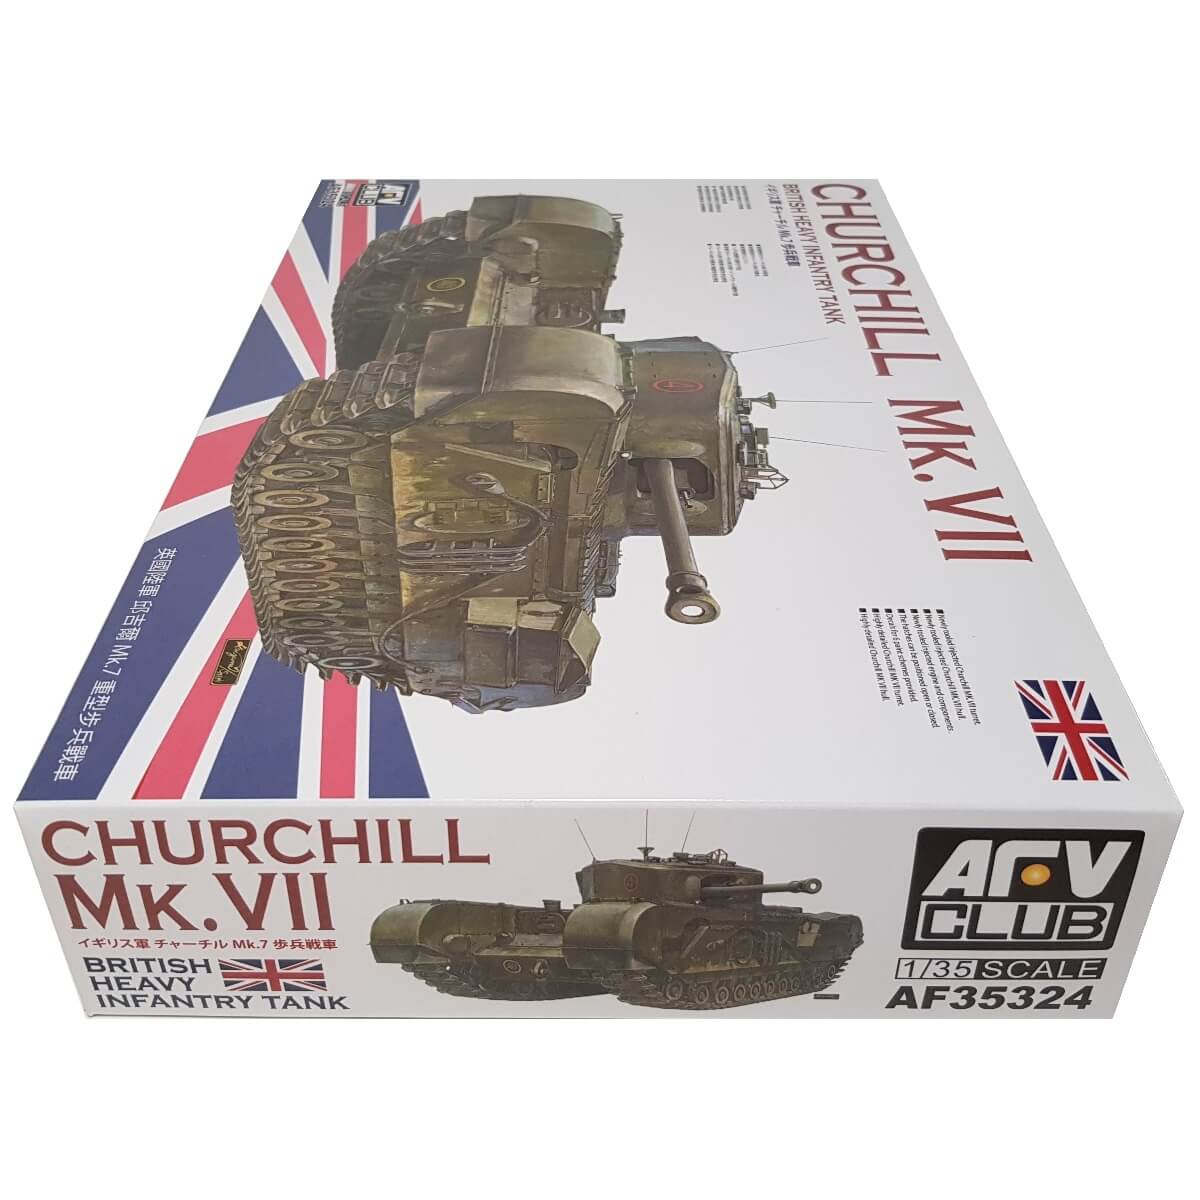 1:35 Churchill Mk. VII British Heavy Infantry Tank - AFV CLUB